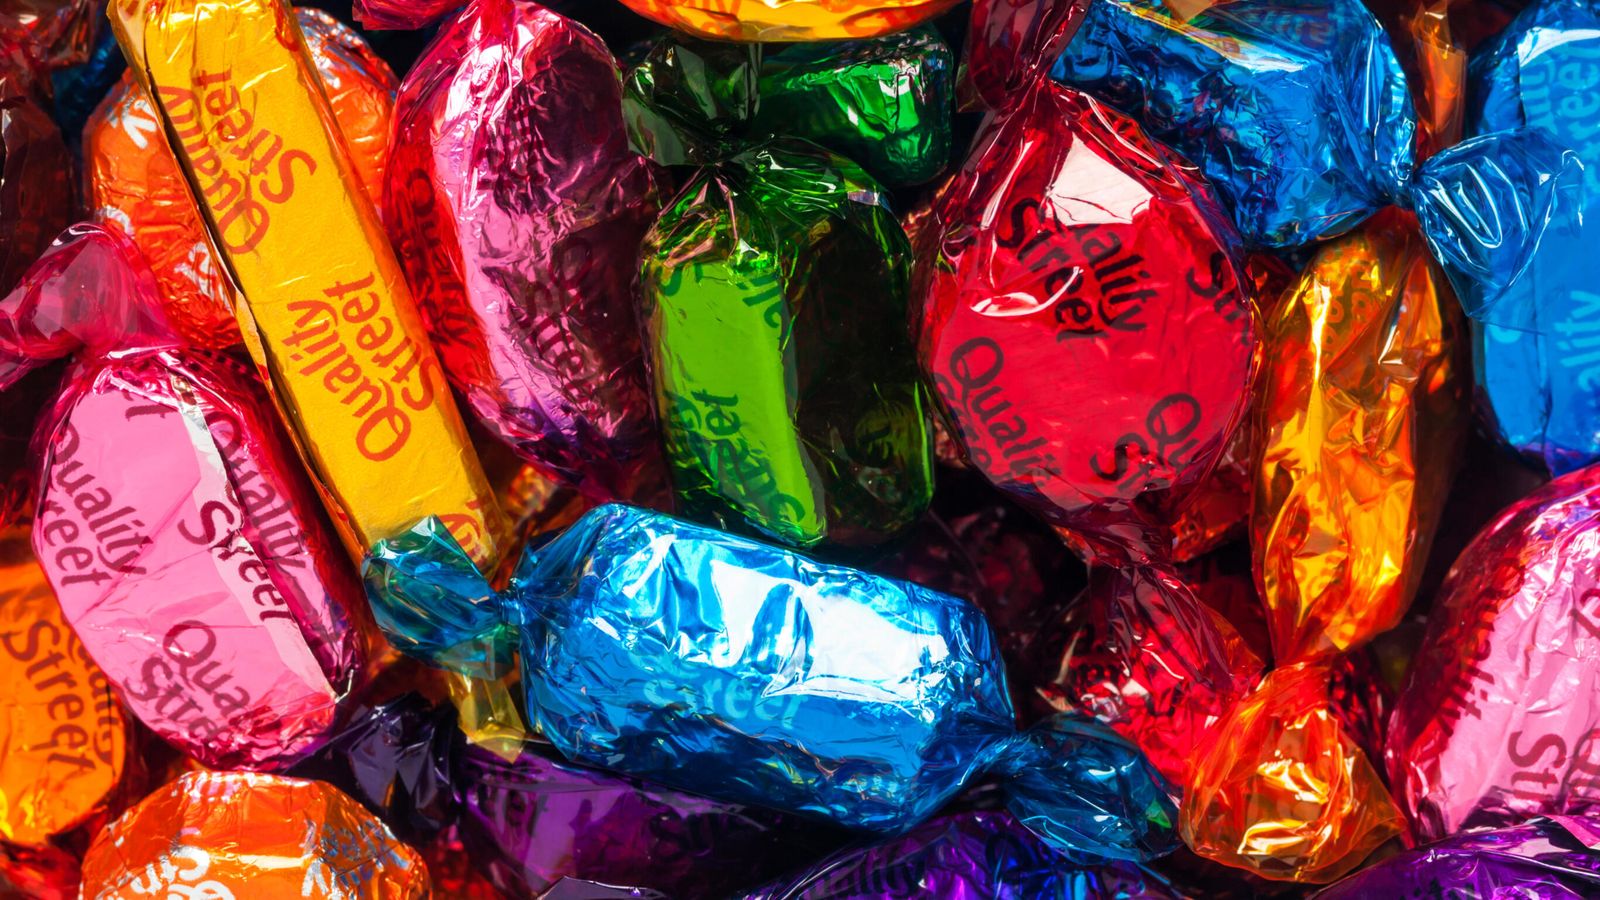 Quality Street beschränkt beliebte Plastikverpackungen nach 86 Jahren als Teil einer grünen Initiative auf Schokolade |  Nachrichten aus Großbritannien